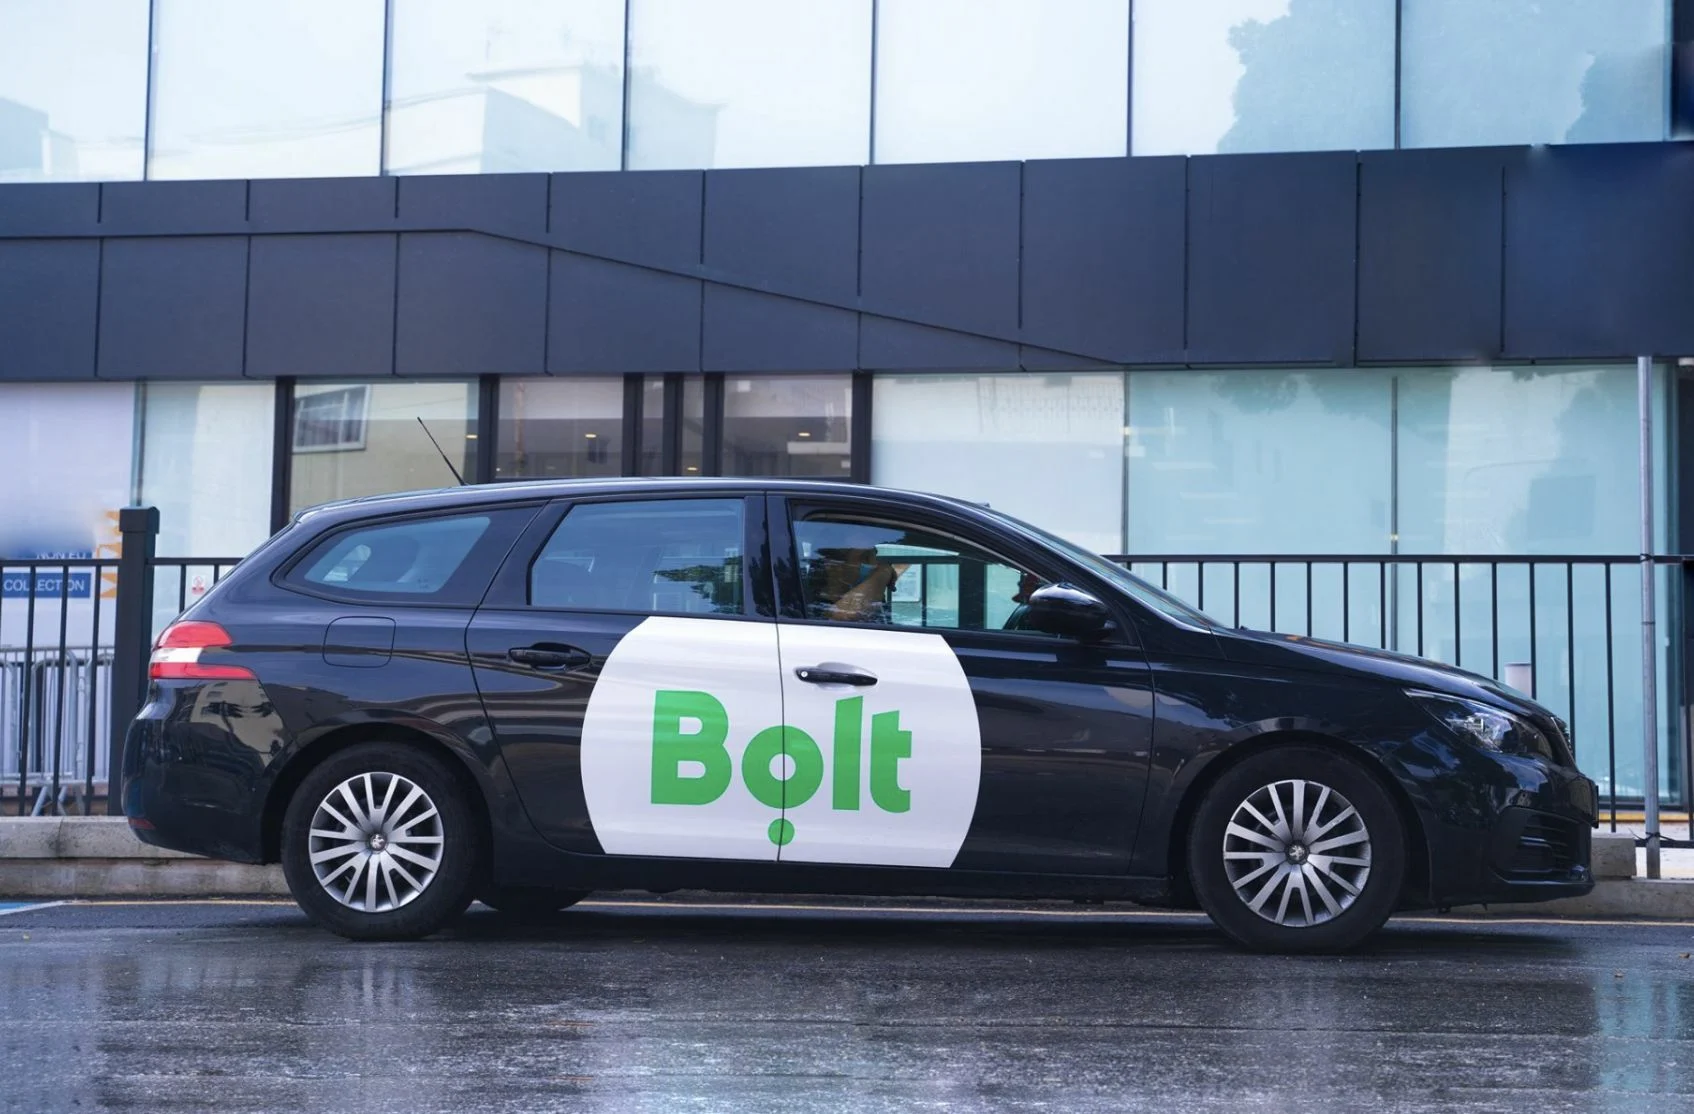 Voiture noire avec logo Bolt garée en ville